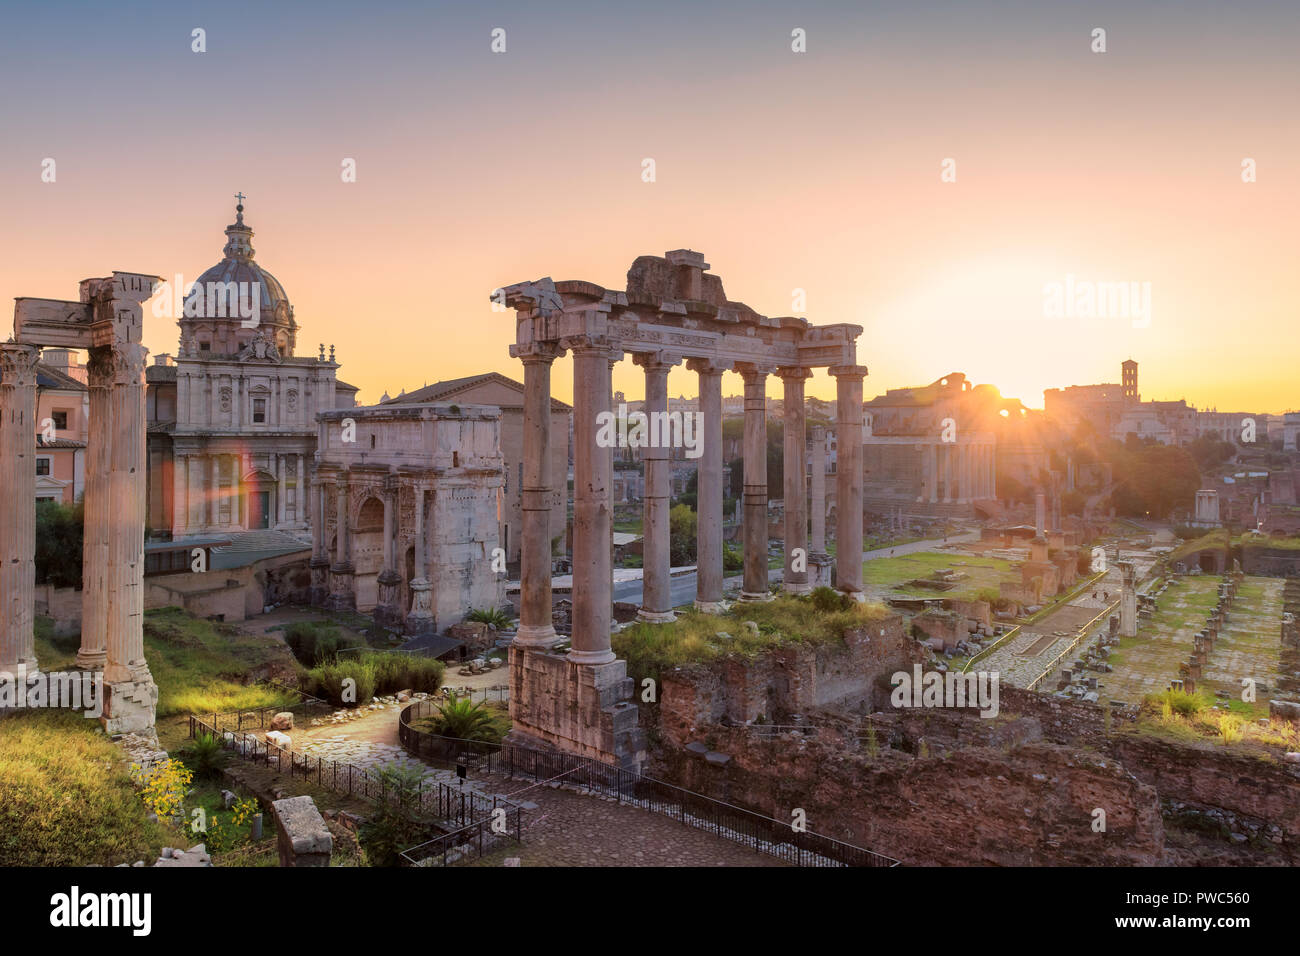 Forum romain au lever du soleil, Rome - Italie Banque D'Images